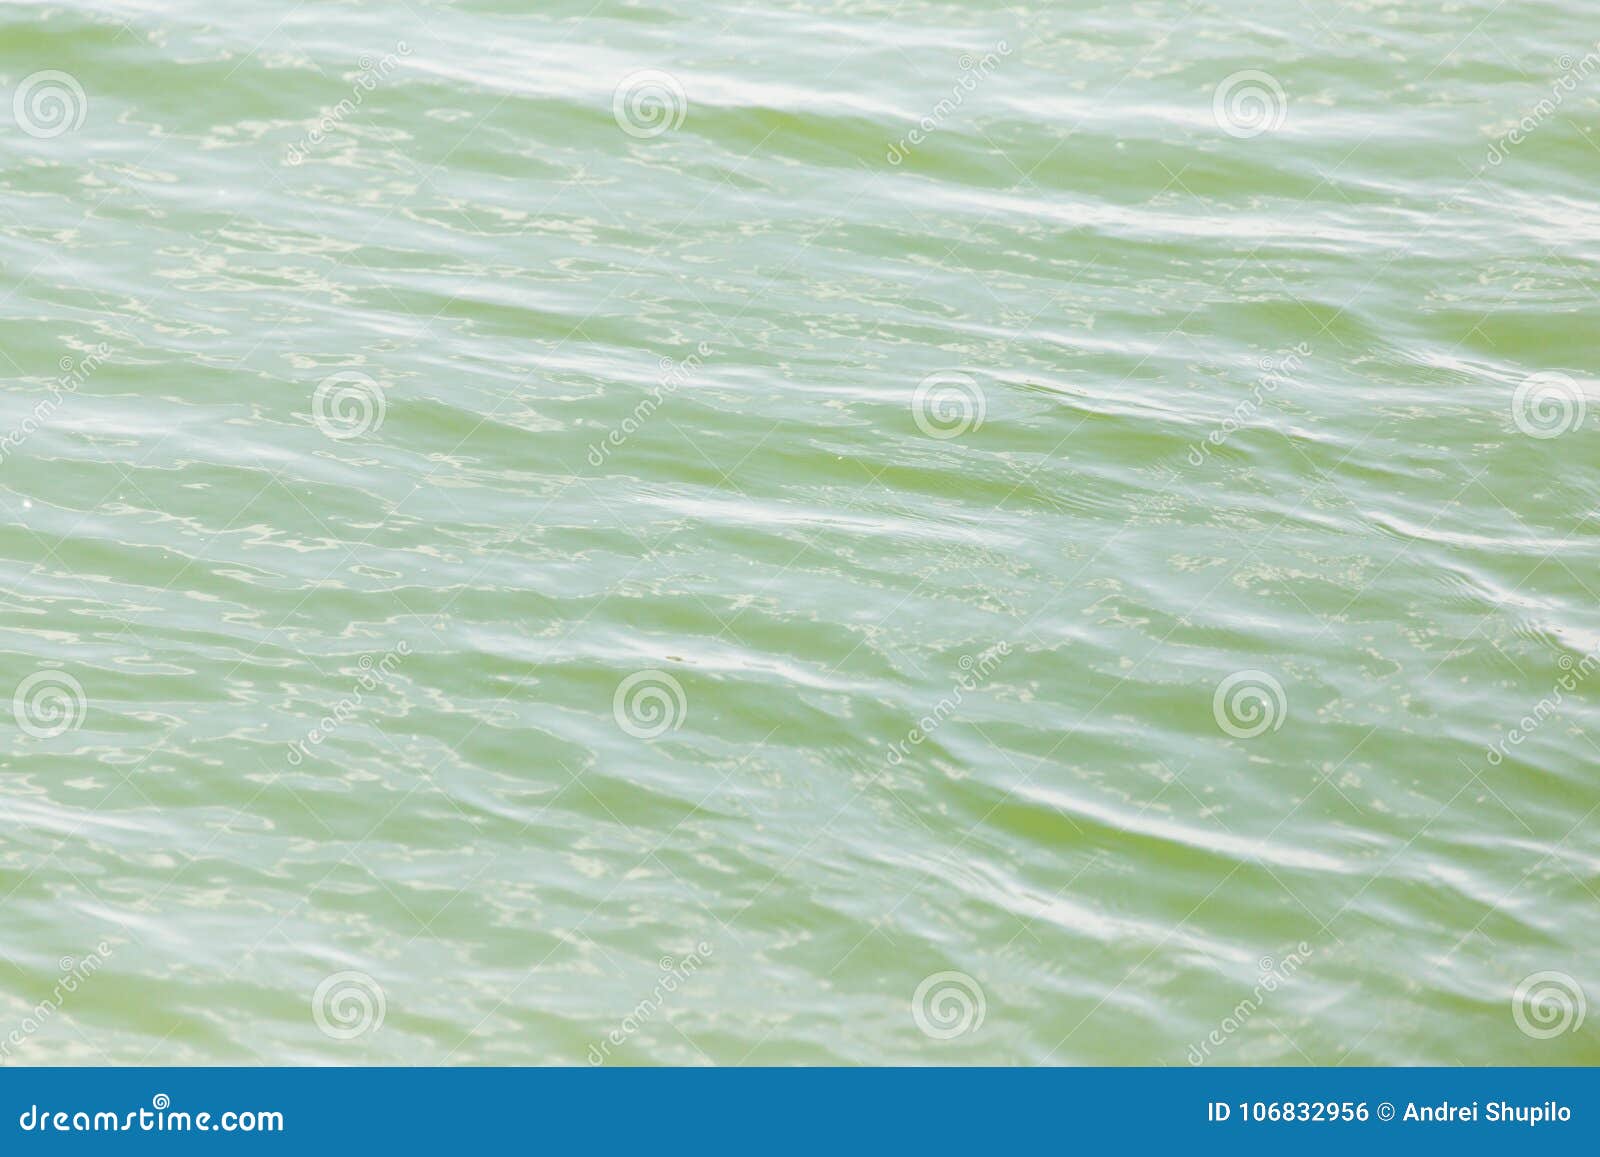 Hintergrund der Oberfläche des Wassers